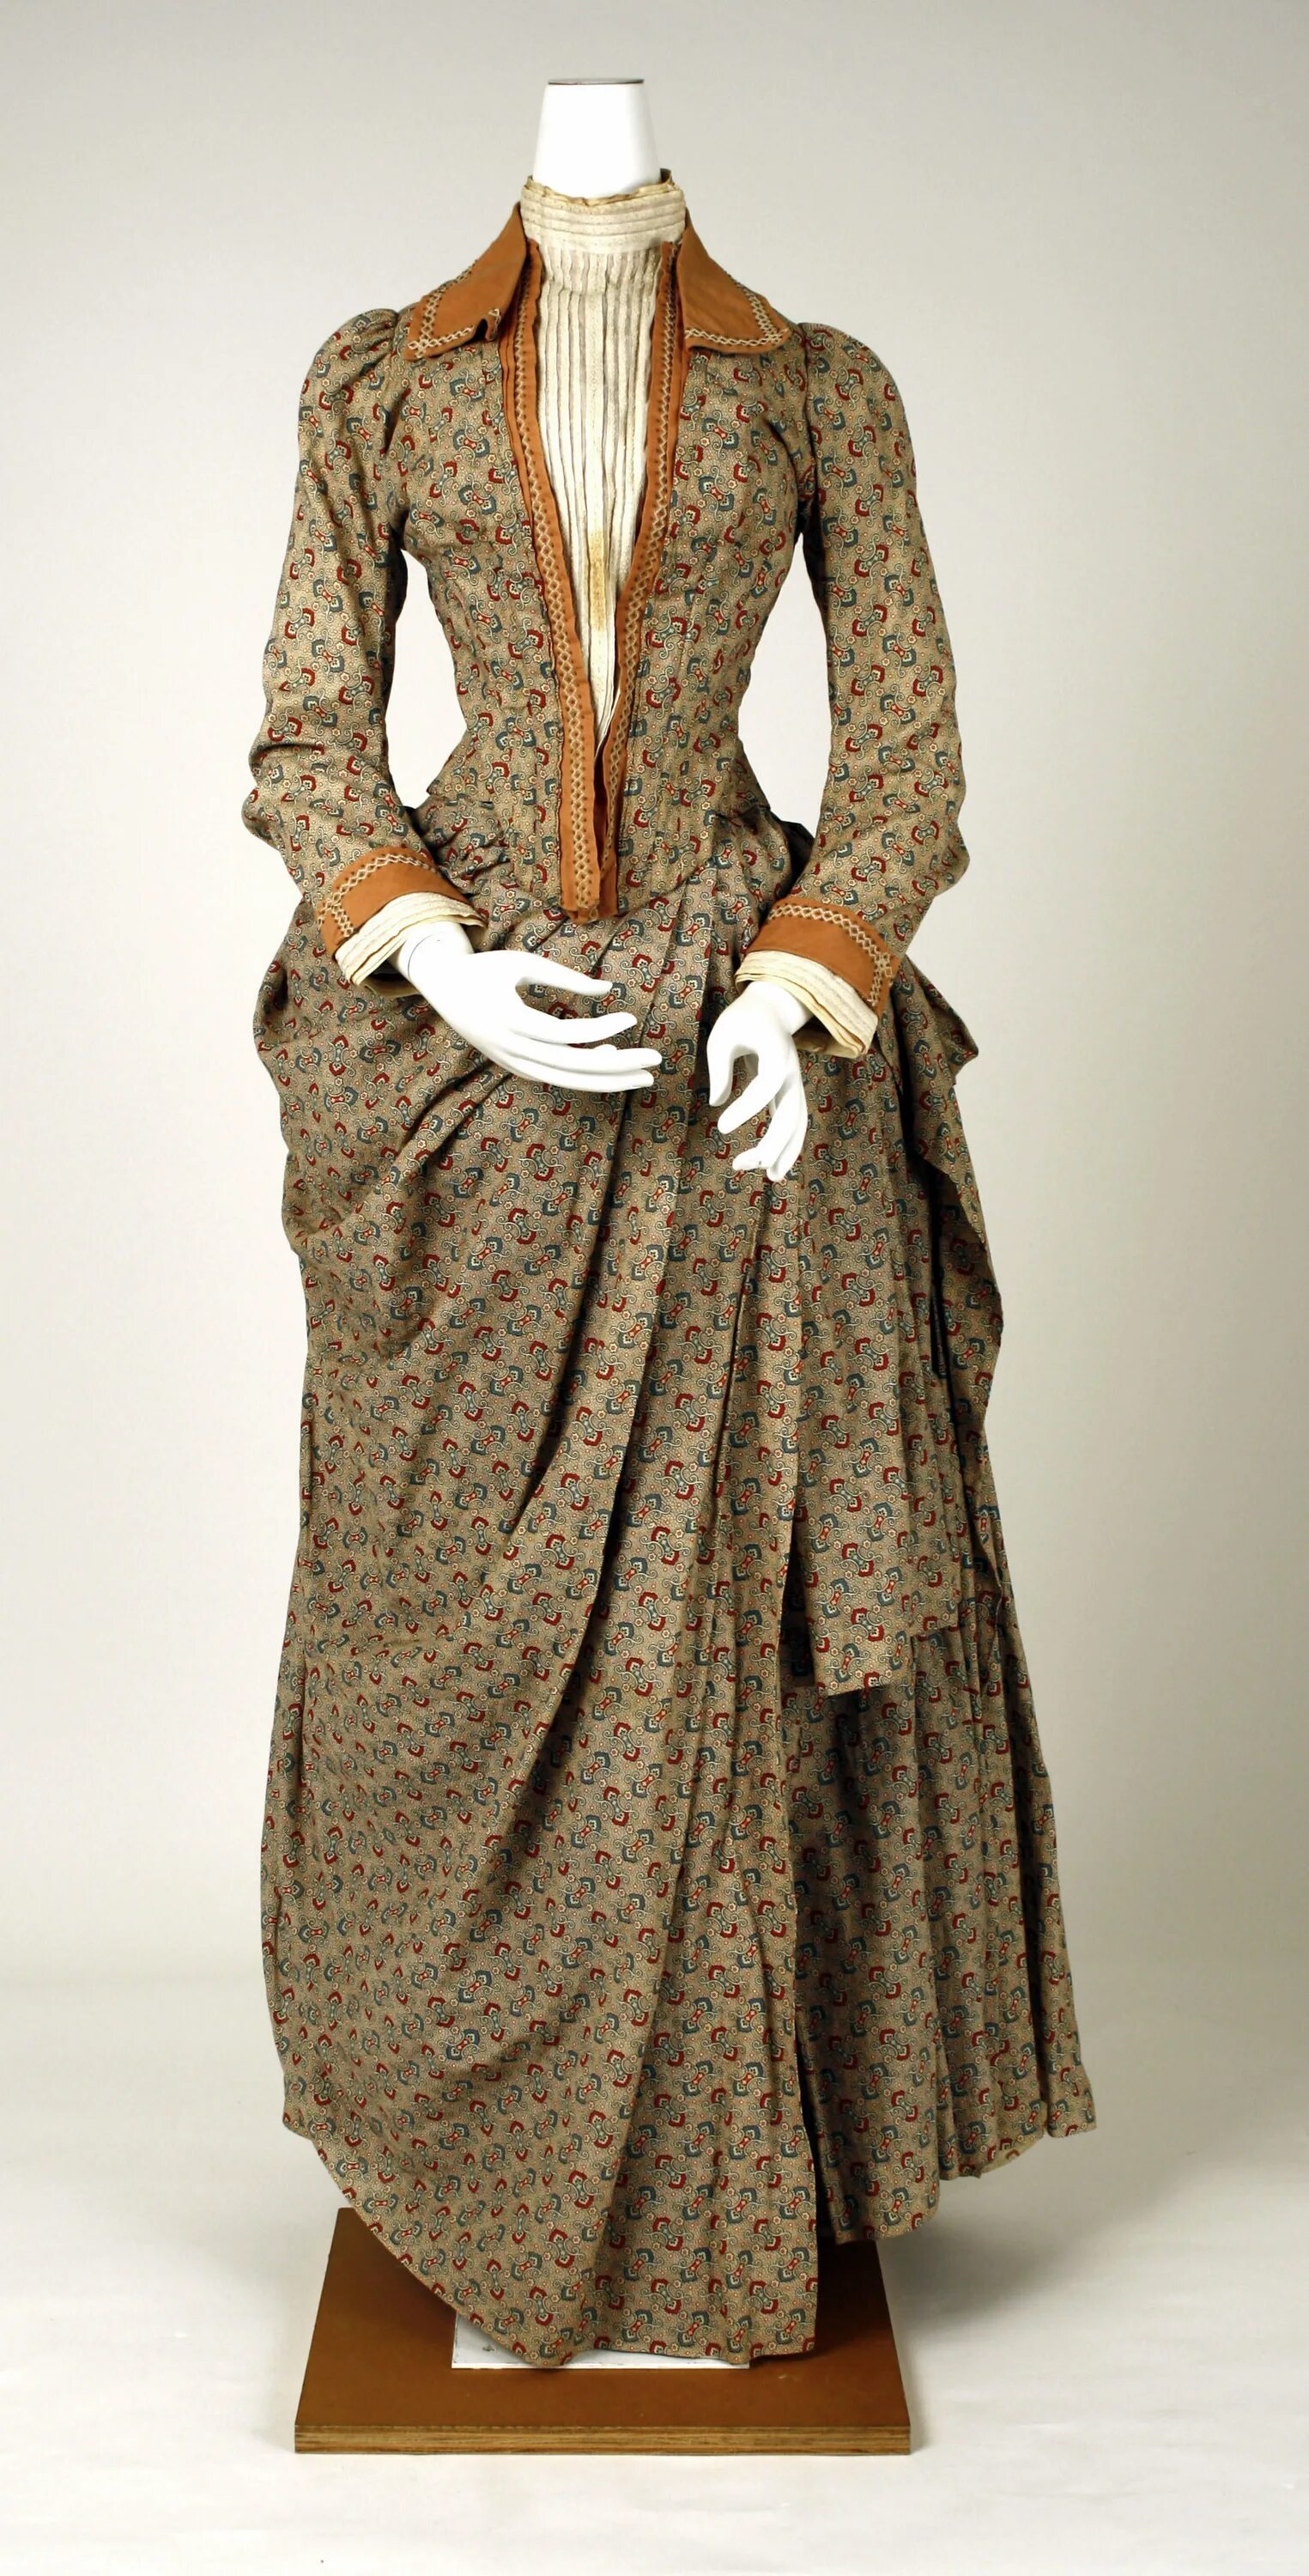 Платья конца 19 века. Женская мода 19 века в Англии. Костюм горожанки 19 век. Англия 19 век одежда женская. Англия 19 век мода.